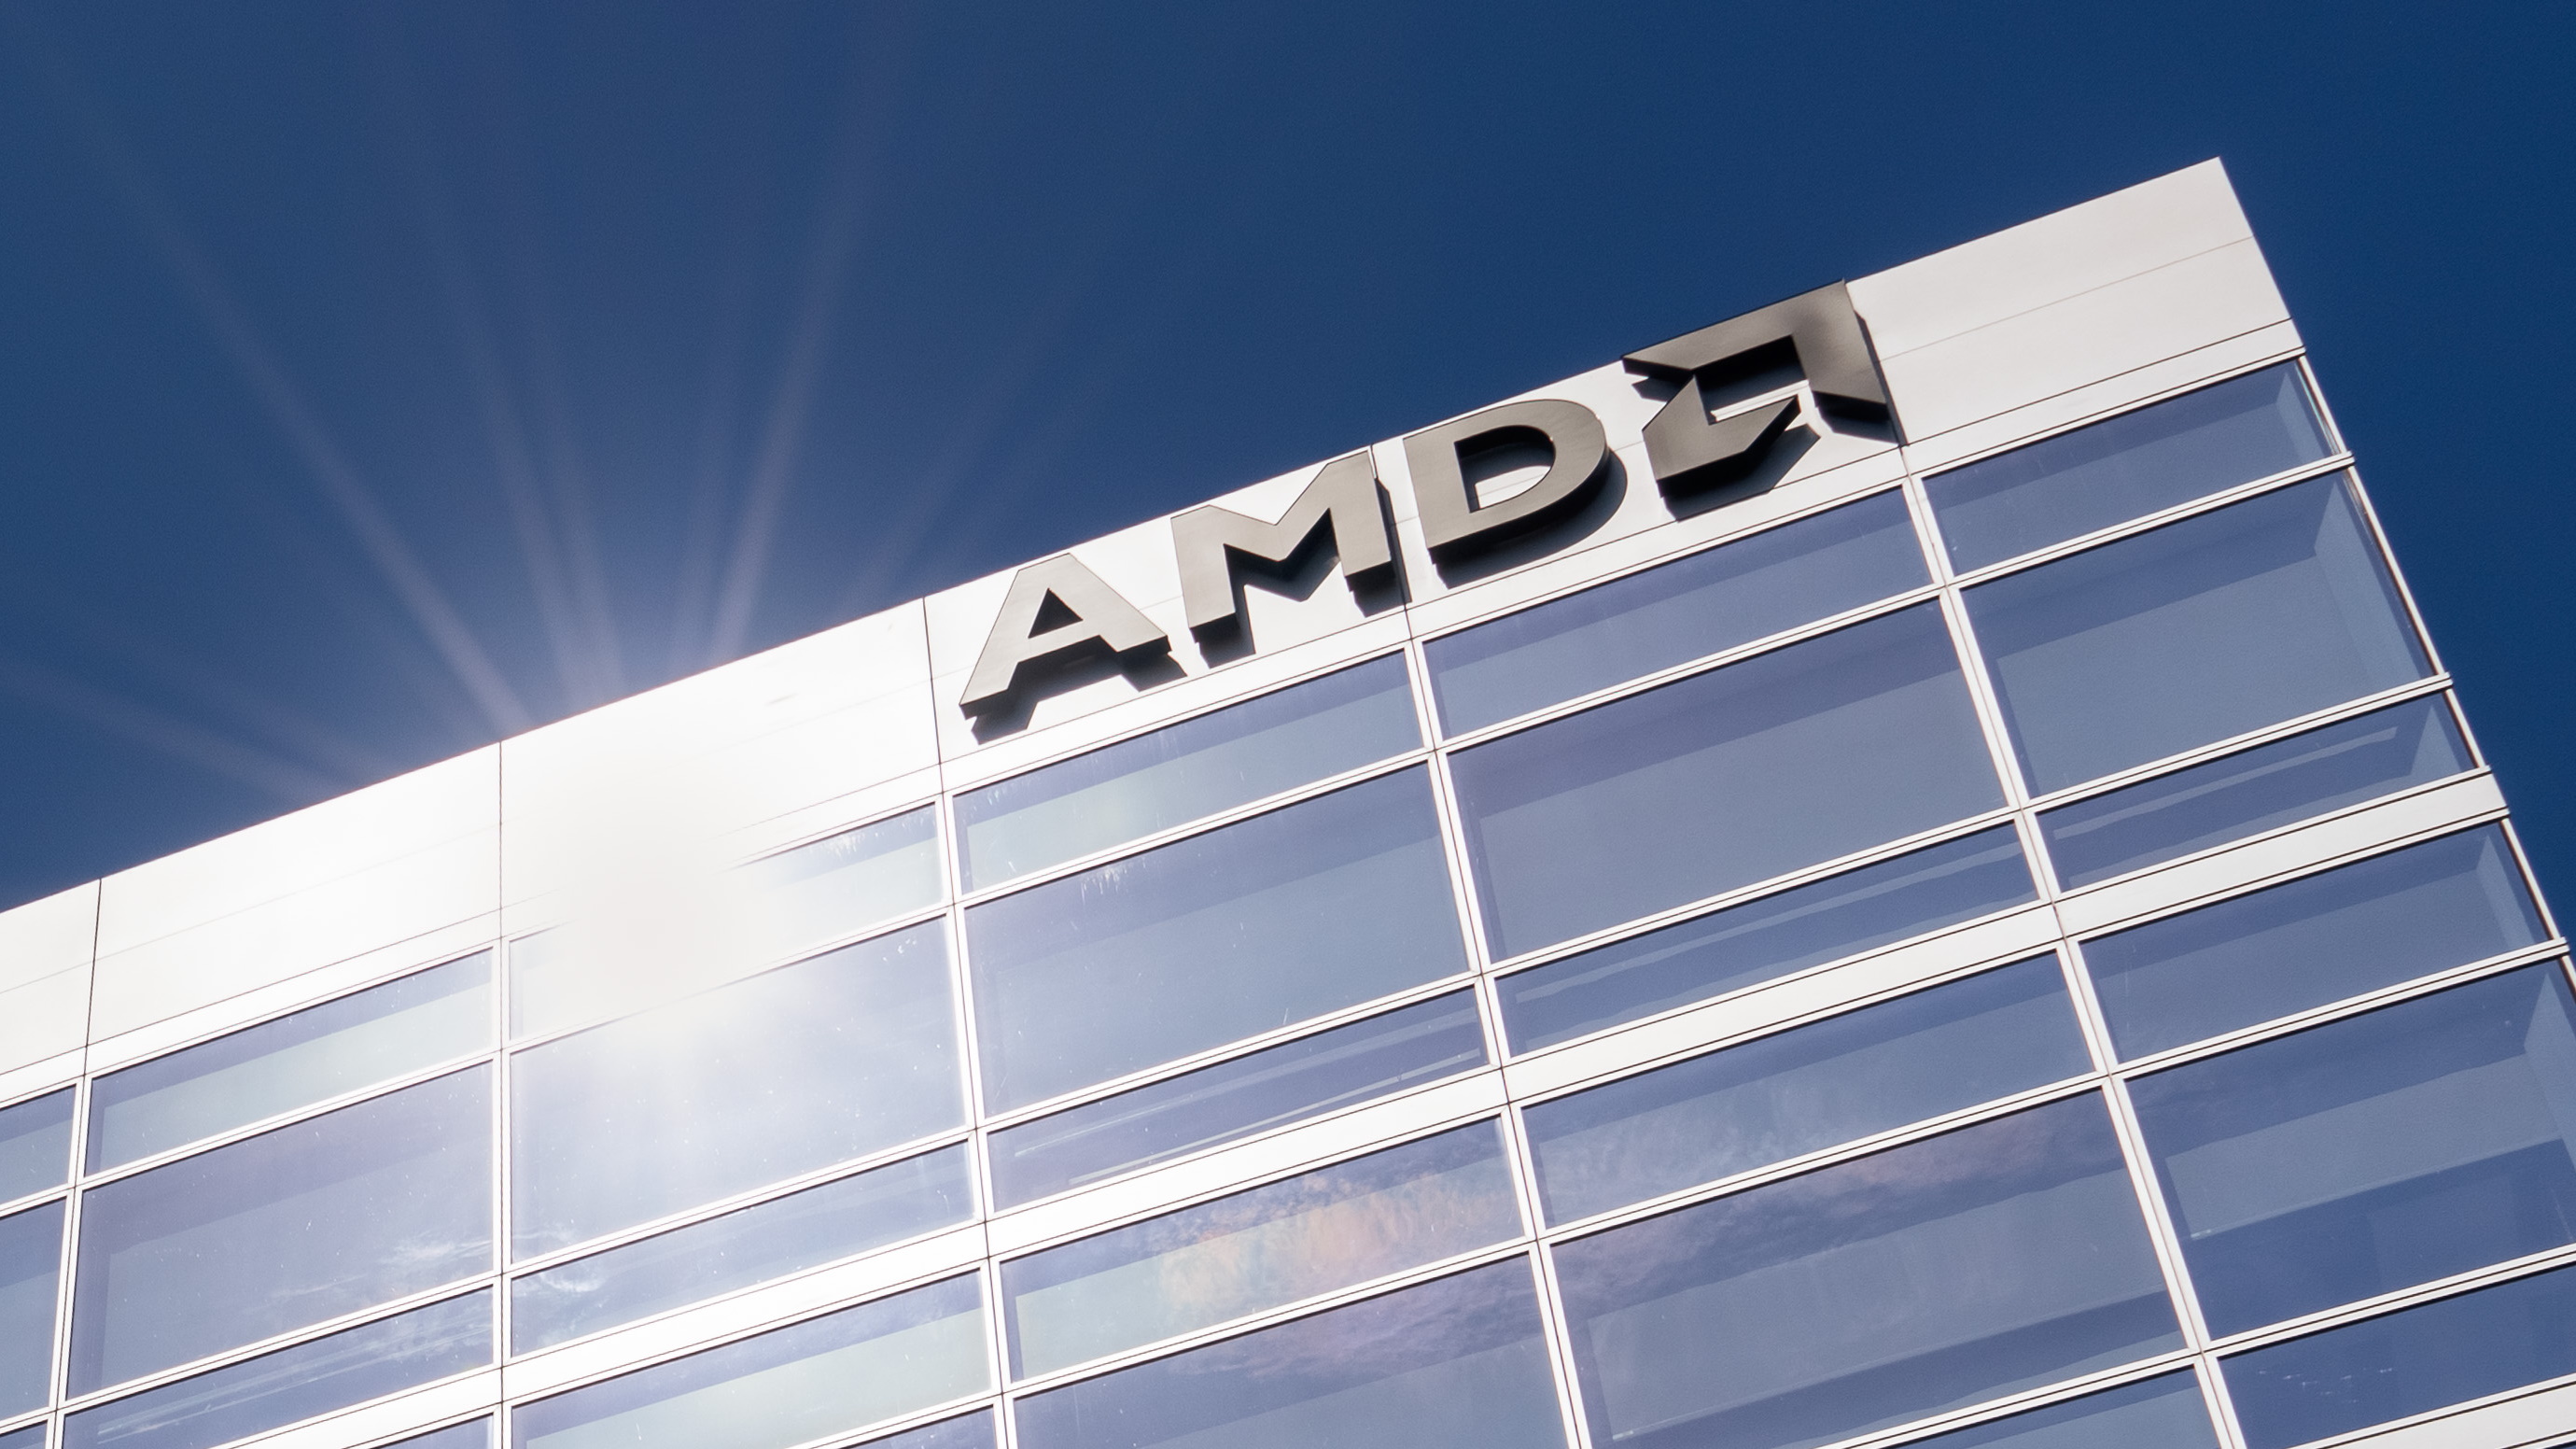 كلف "خداع" وحدة المعالجة المركزية للبلدوزر الثماني النواة من AMD 12.1 مليون دولار